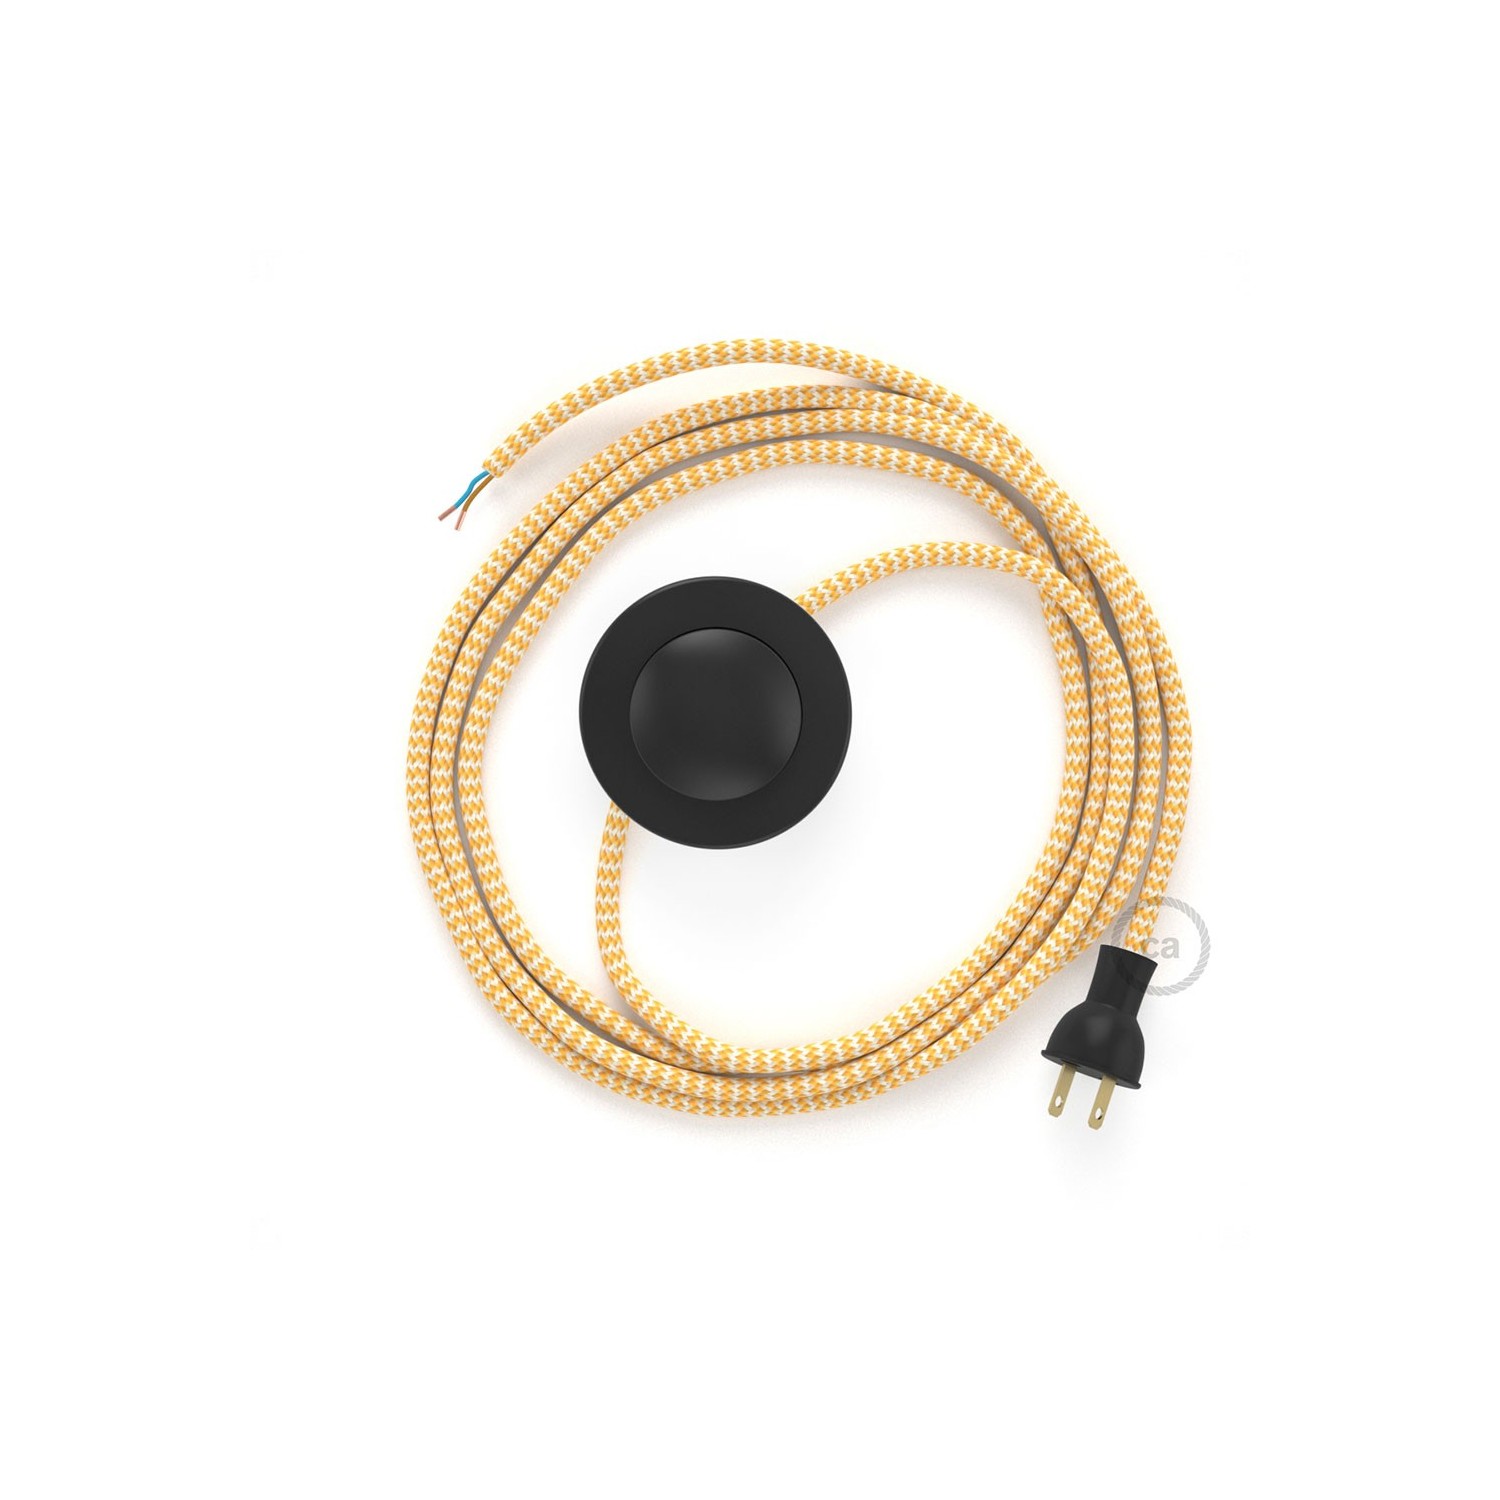 Cableado para lámpara de piso, cable RZ10 Rayón ZigZag Amarillo 3 m. Elige tu el color de la clavija y del interruptor!